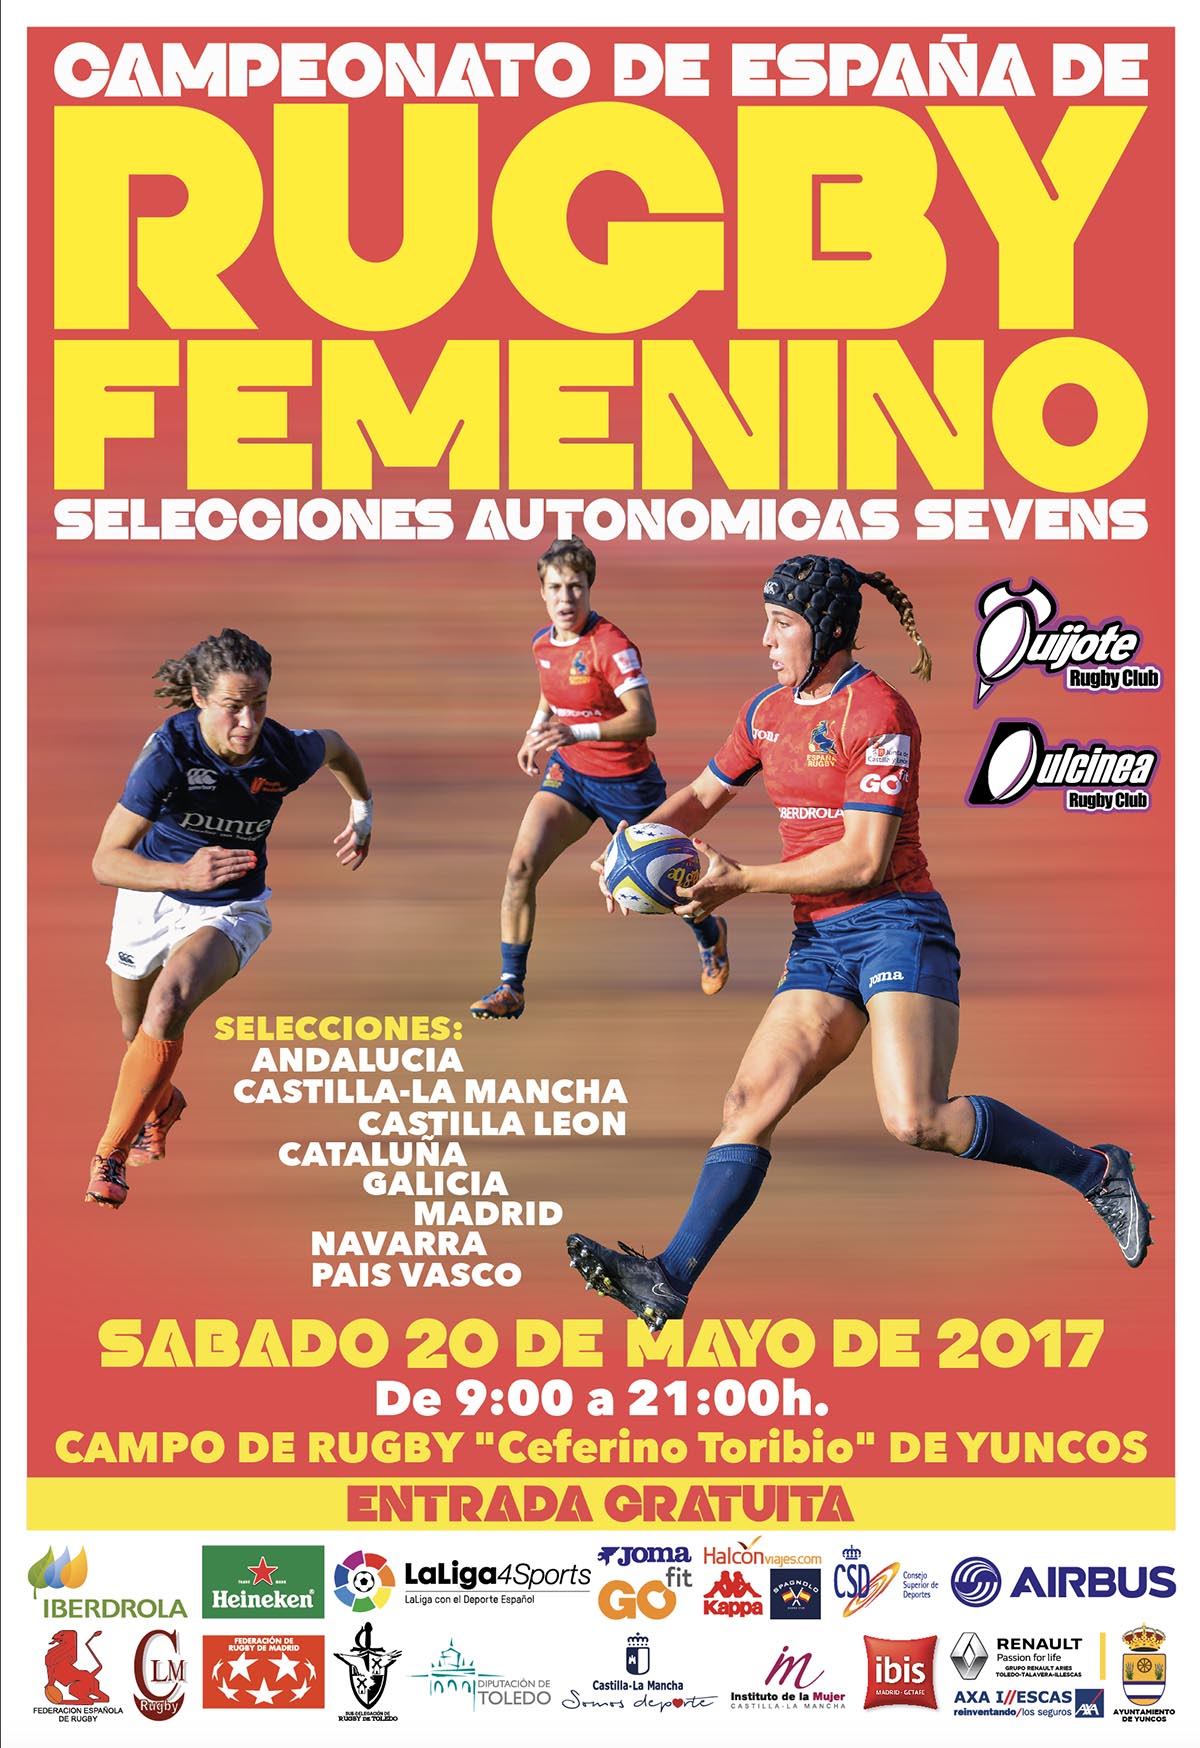 Cartel del Campeonato de España de rugby femenino